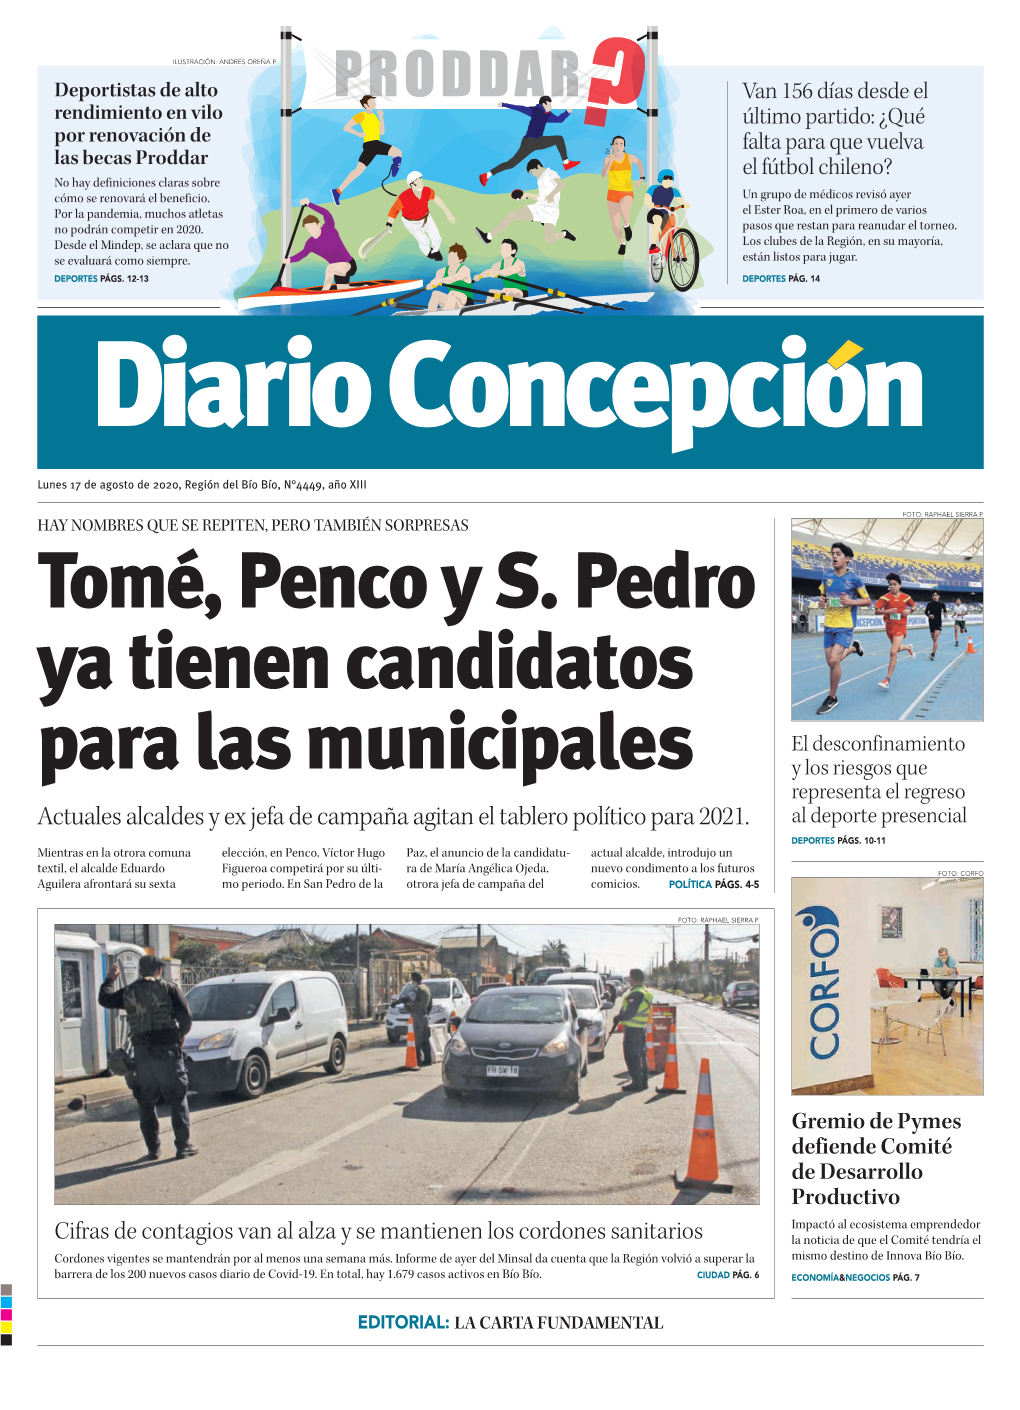 Tomé, Penco Y S. Pedro Ya Tienen Candidatos Para Las Municipales